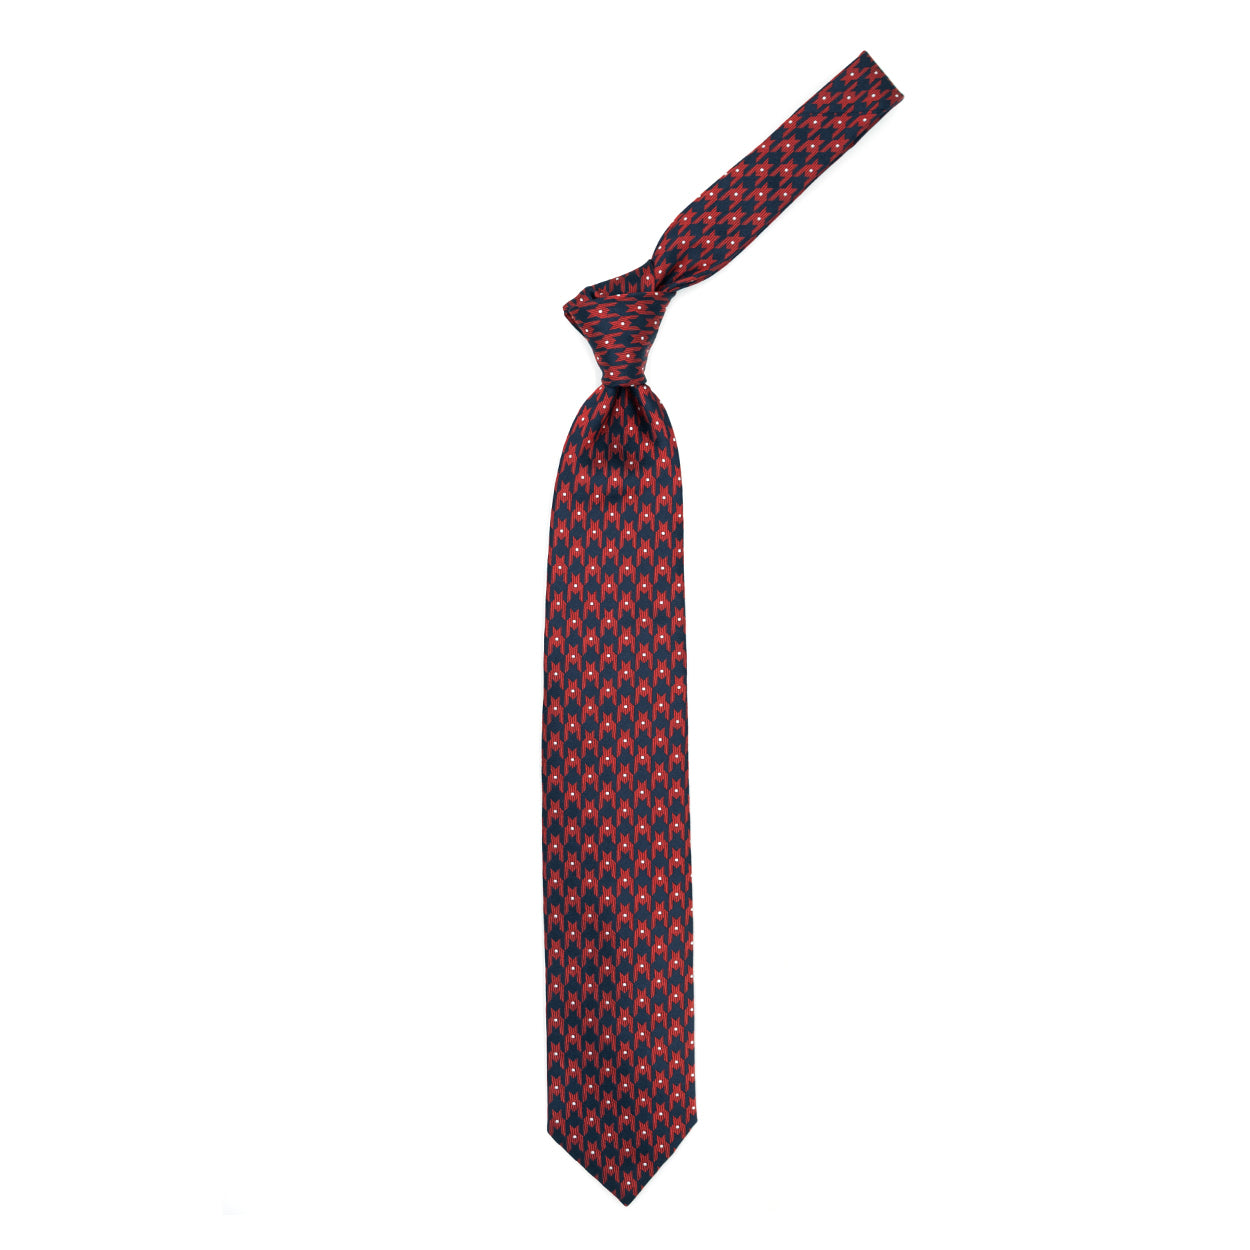 Cravatta blu con pattern astratto rosso e puntini grigi